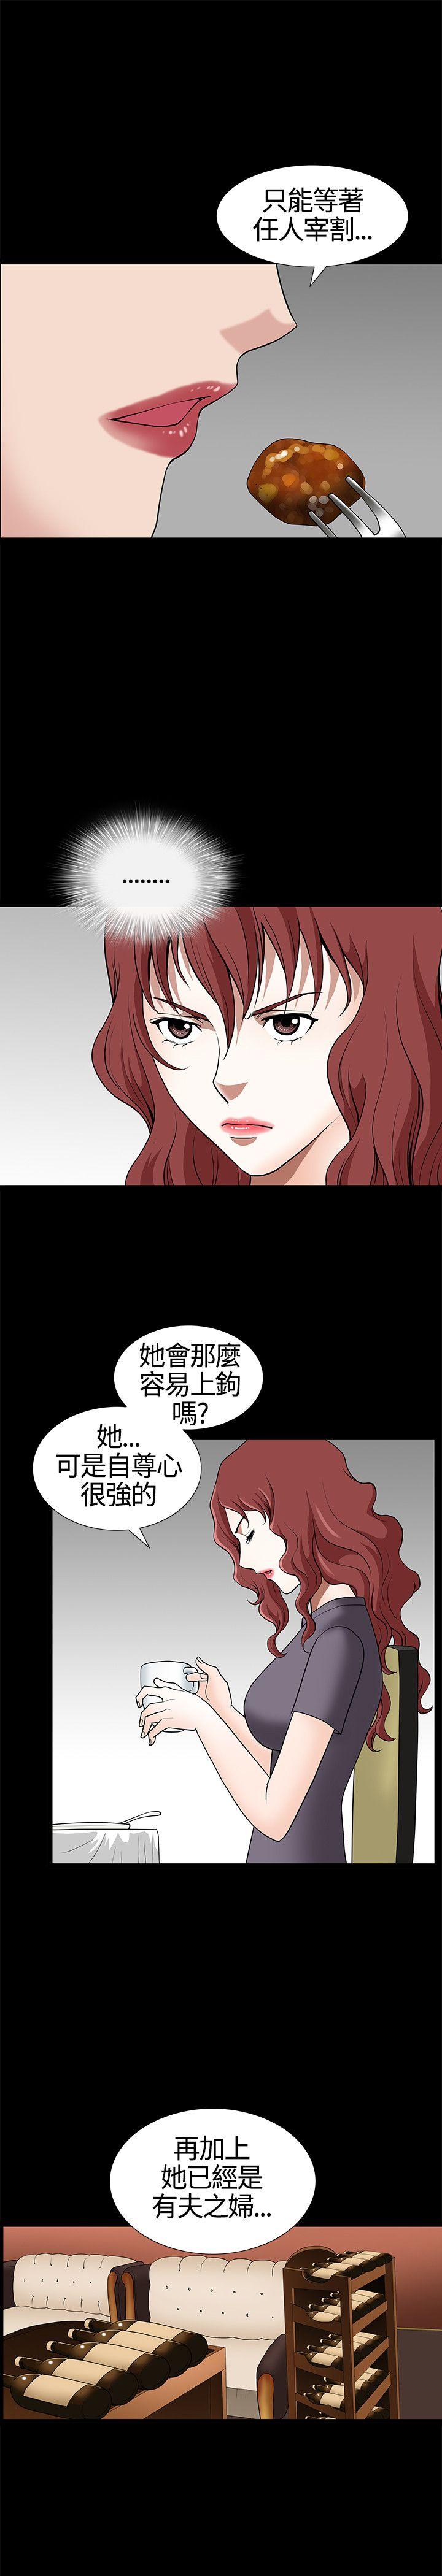 韩国污漫画 人妻性解放3:粗糙的手 第13话 13